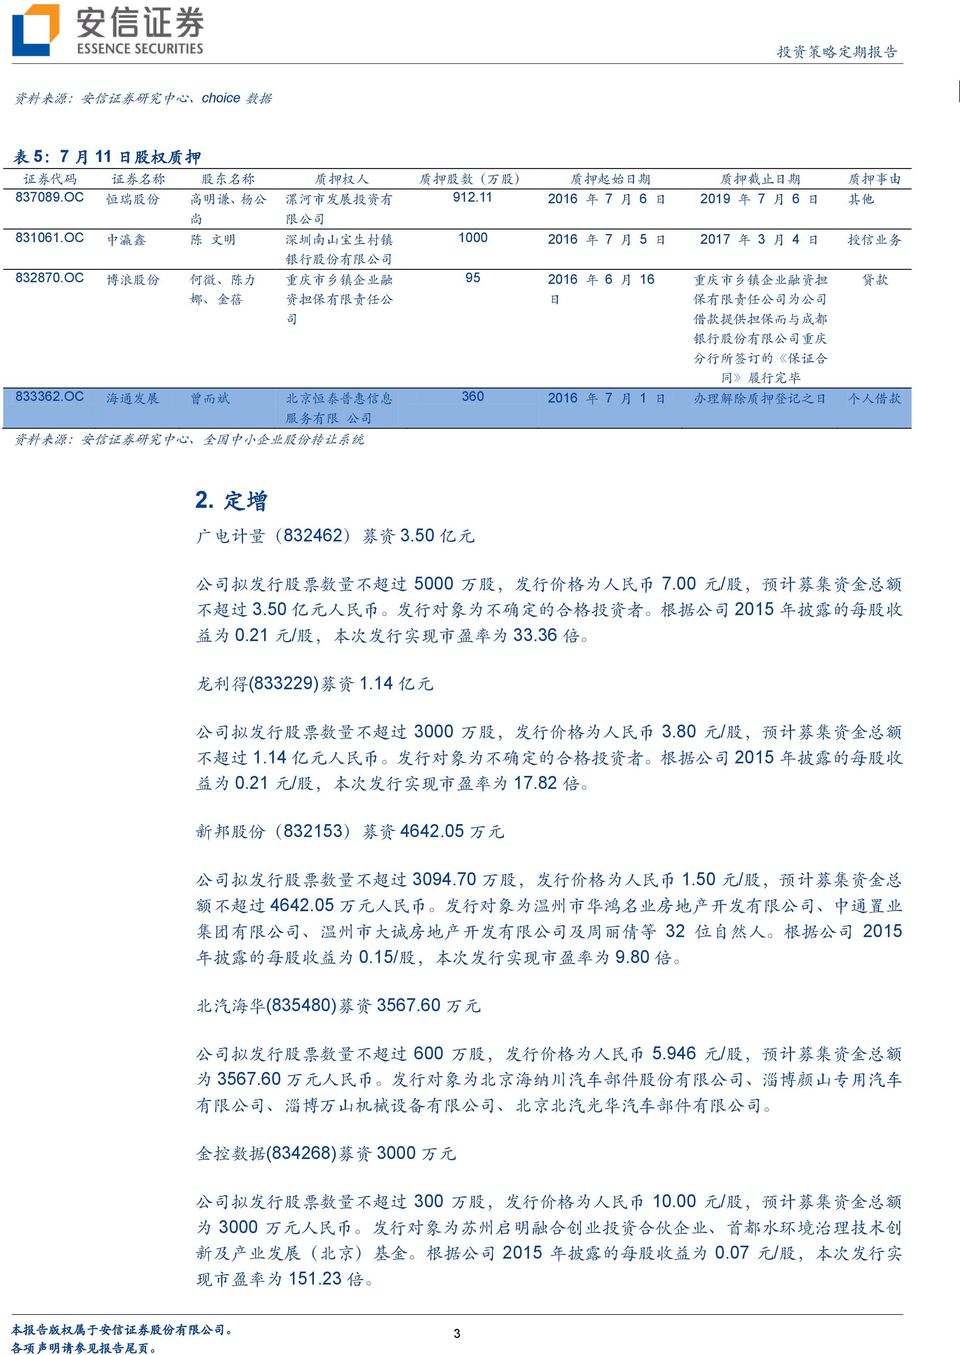 OC 博 浪 股 份 何 微 陈 力 娜 金 蓓 银 行 股 份 有 限 公 司 重 庆 市 乡 镇 企 业 融 资 担 保 有 限 责 任 公 司 833362.